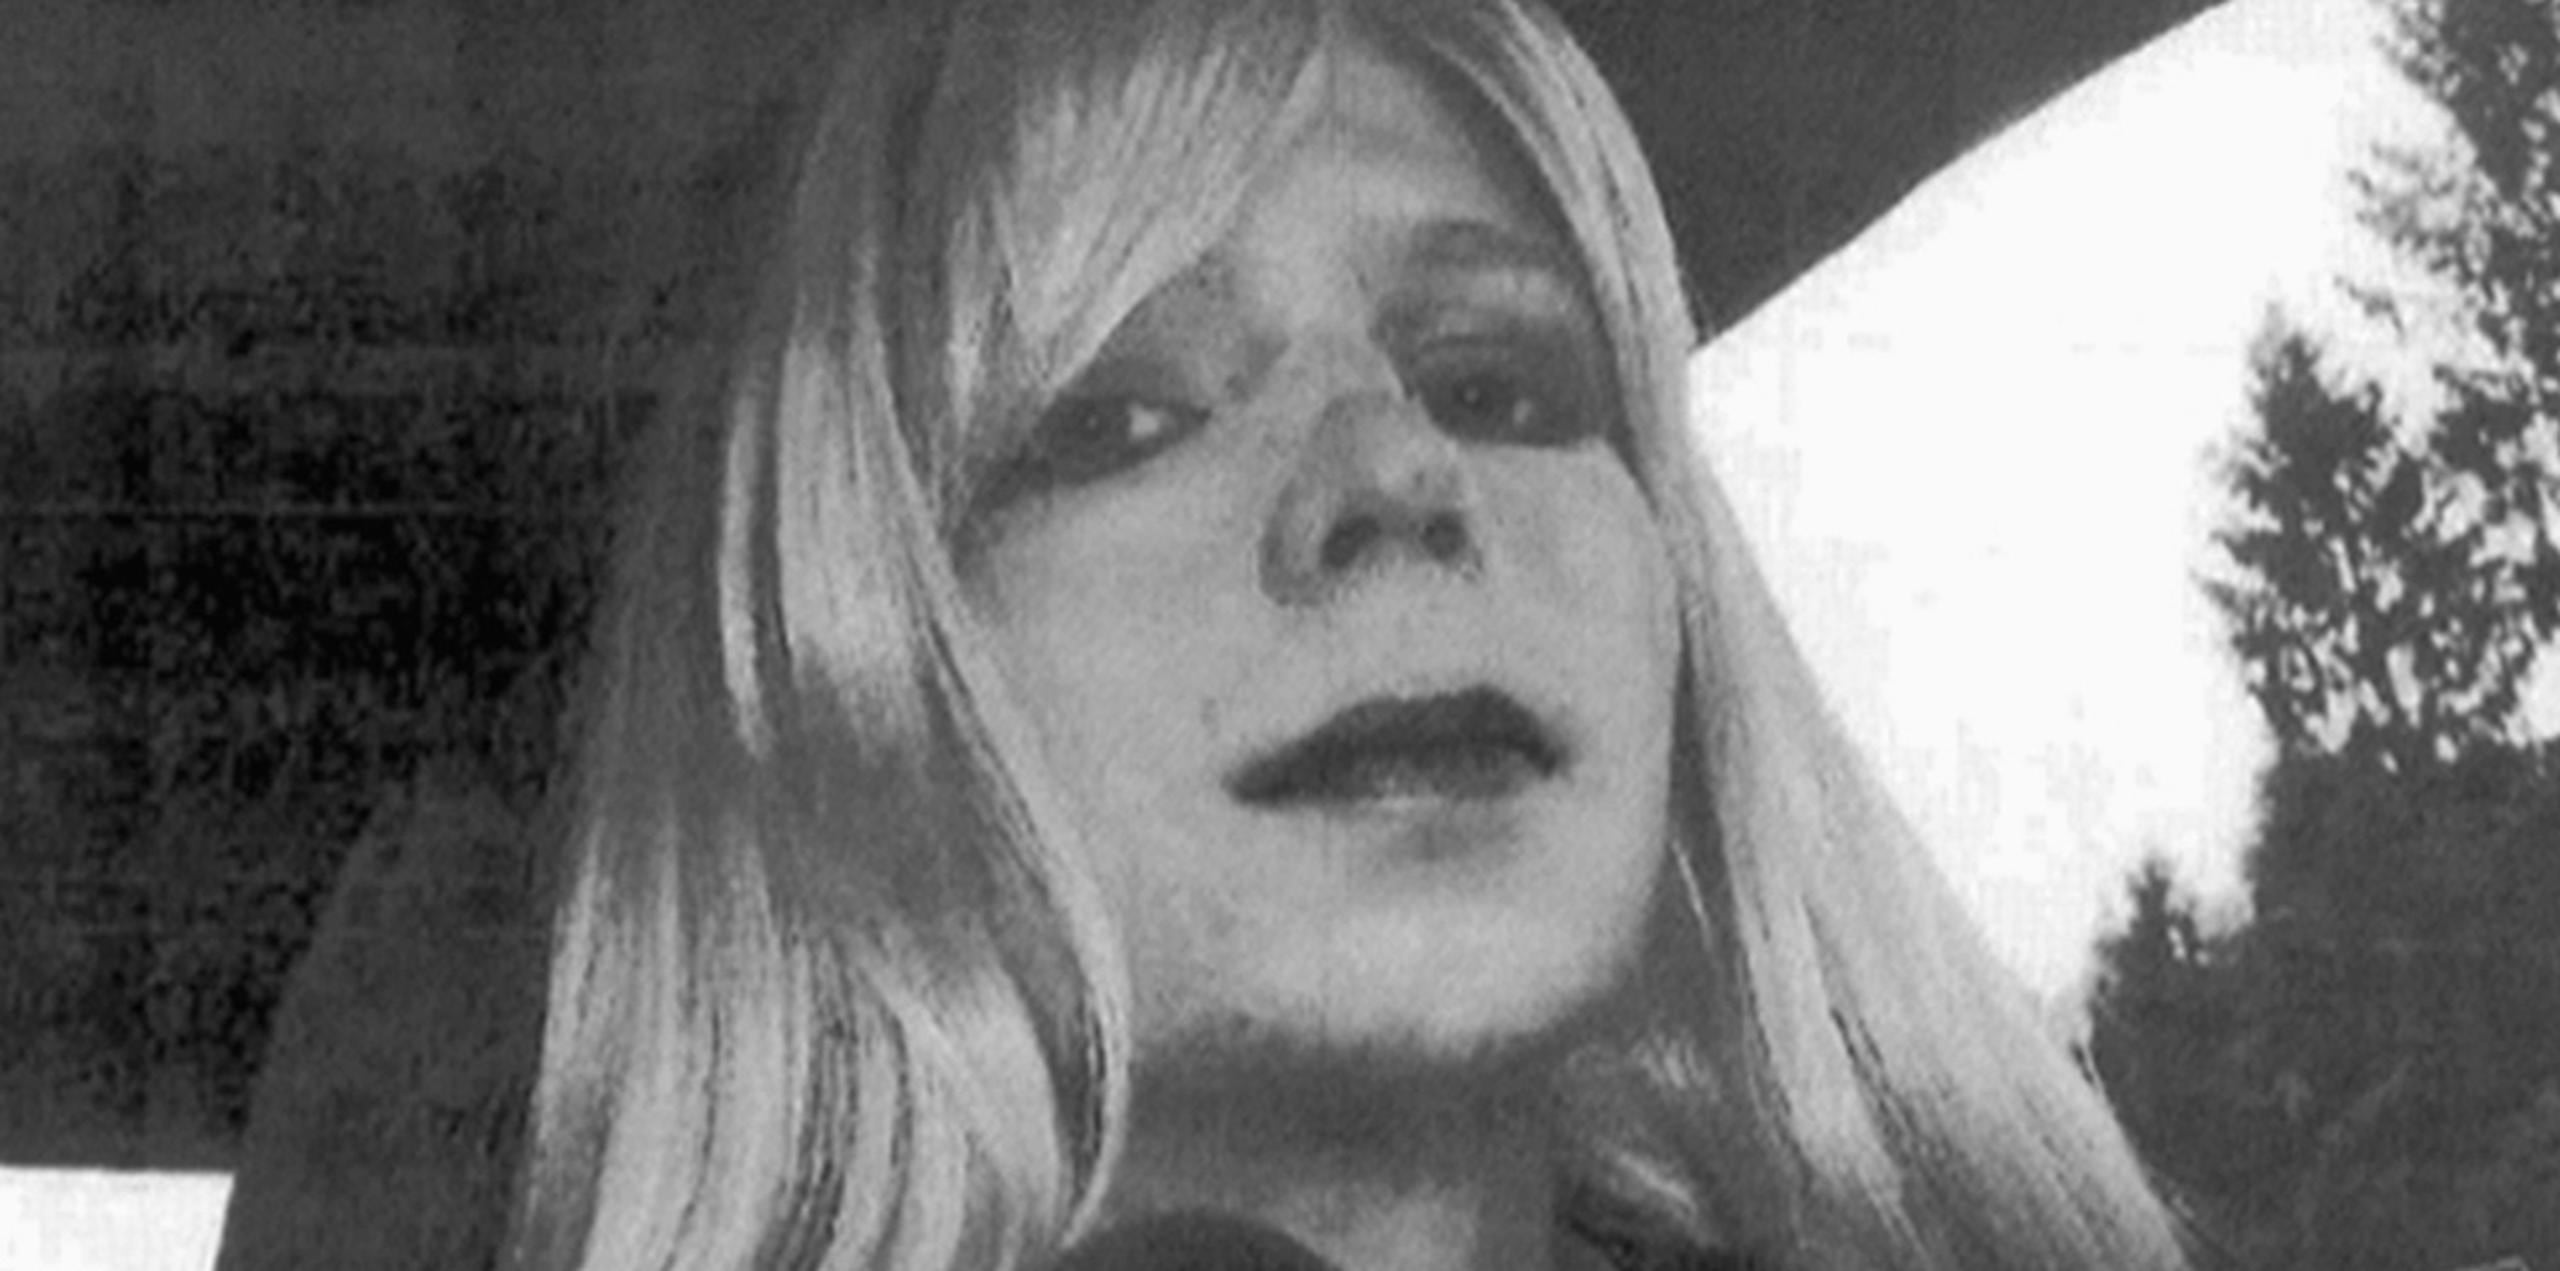 Manning fue condenada en 2013 por violaciones de la ley de espionaje, robo y fraude informático. (AP)